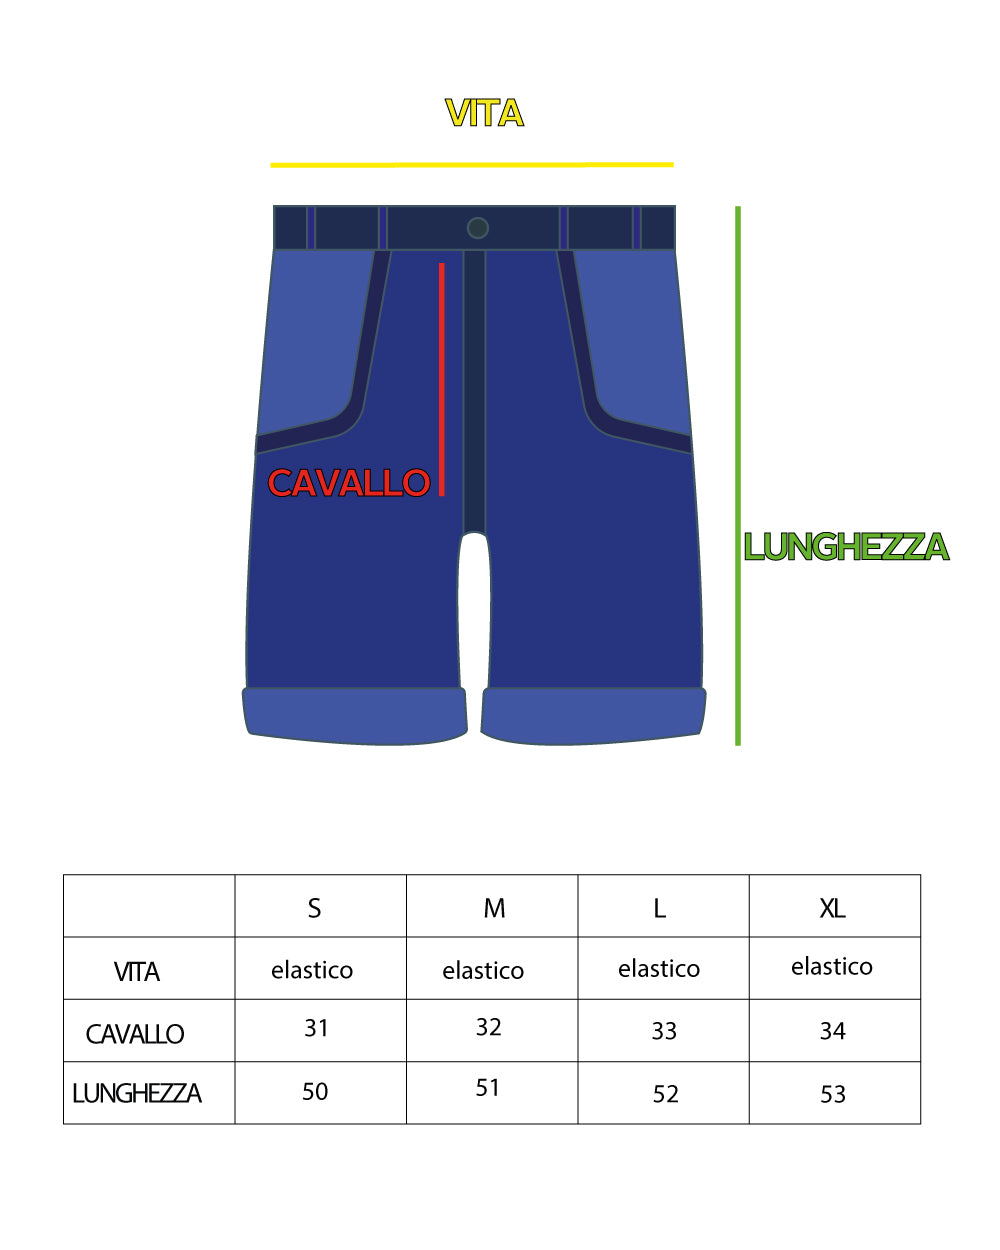 Completo Set Coordinato Uomo Cotone Camicia Con Colletto Bermuda Outfit GIOSAL-OU2321A